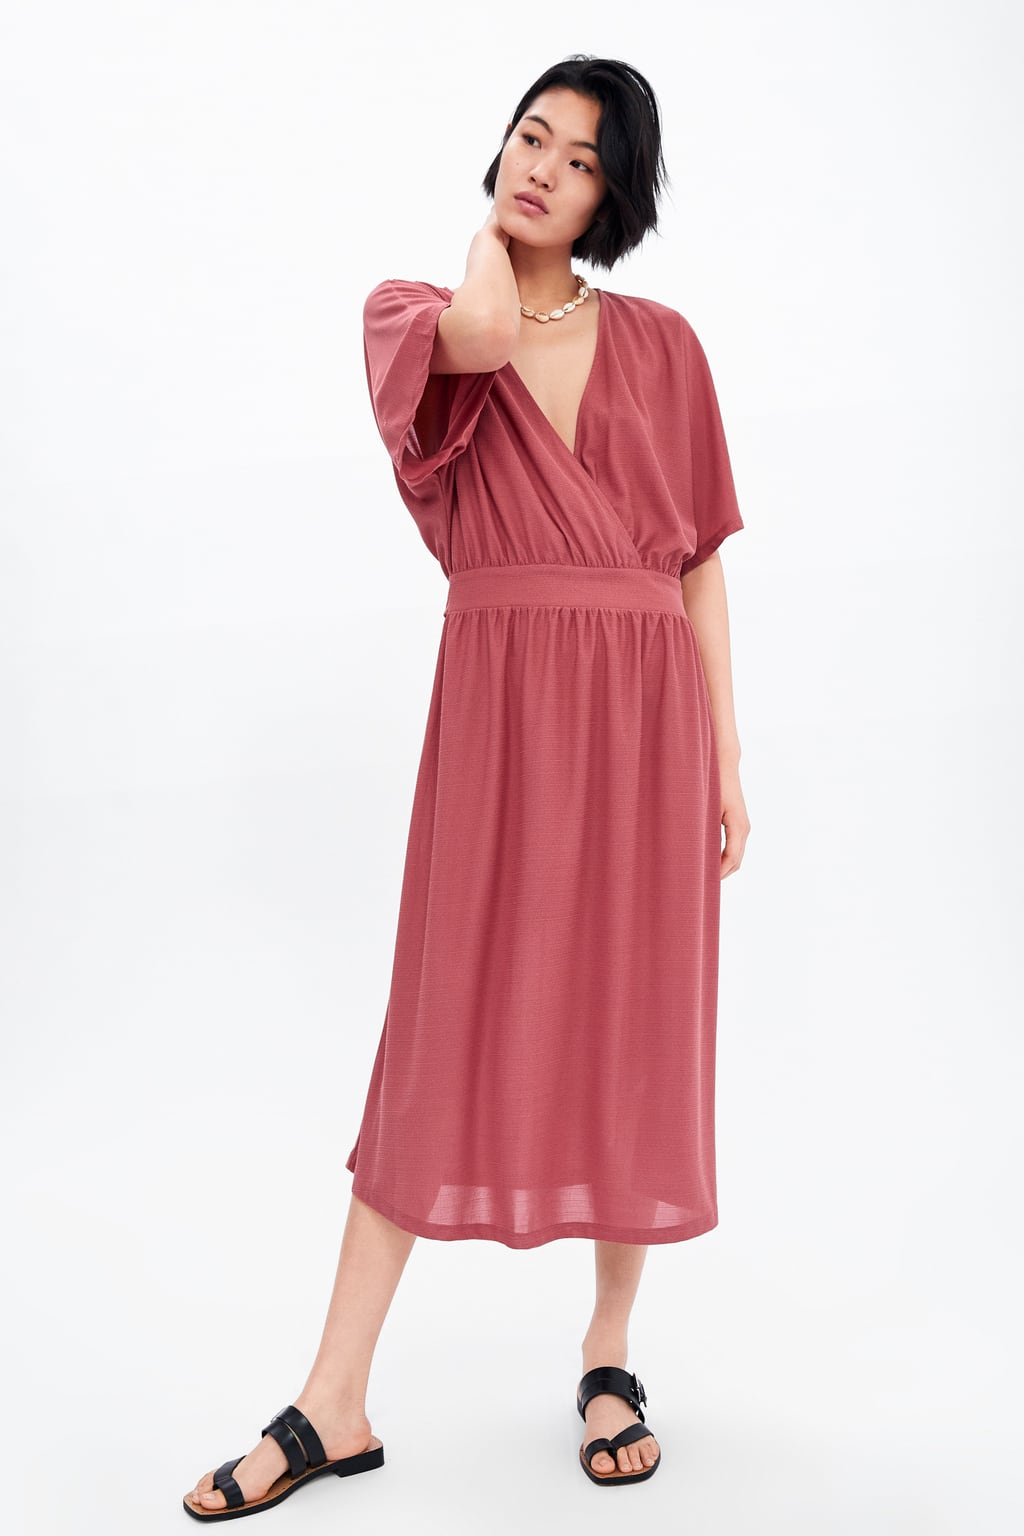 zara pink dress 2019